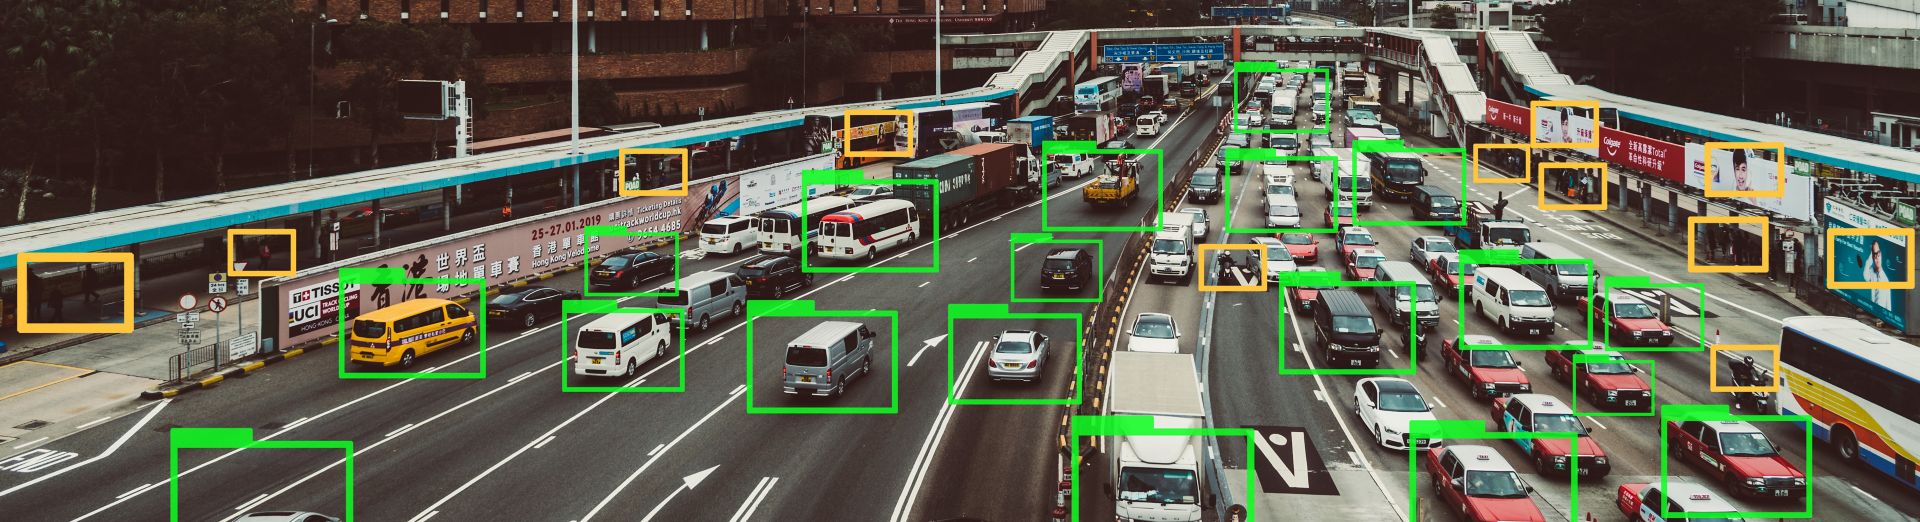 用於追蹤高速公路上汽車的機器學習技術